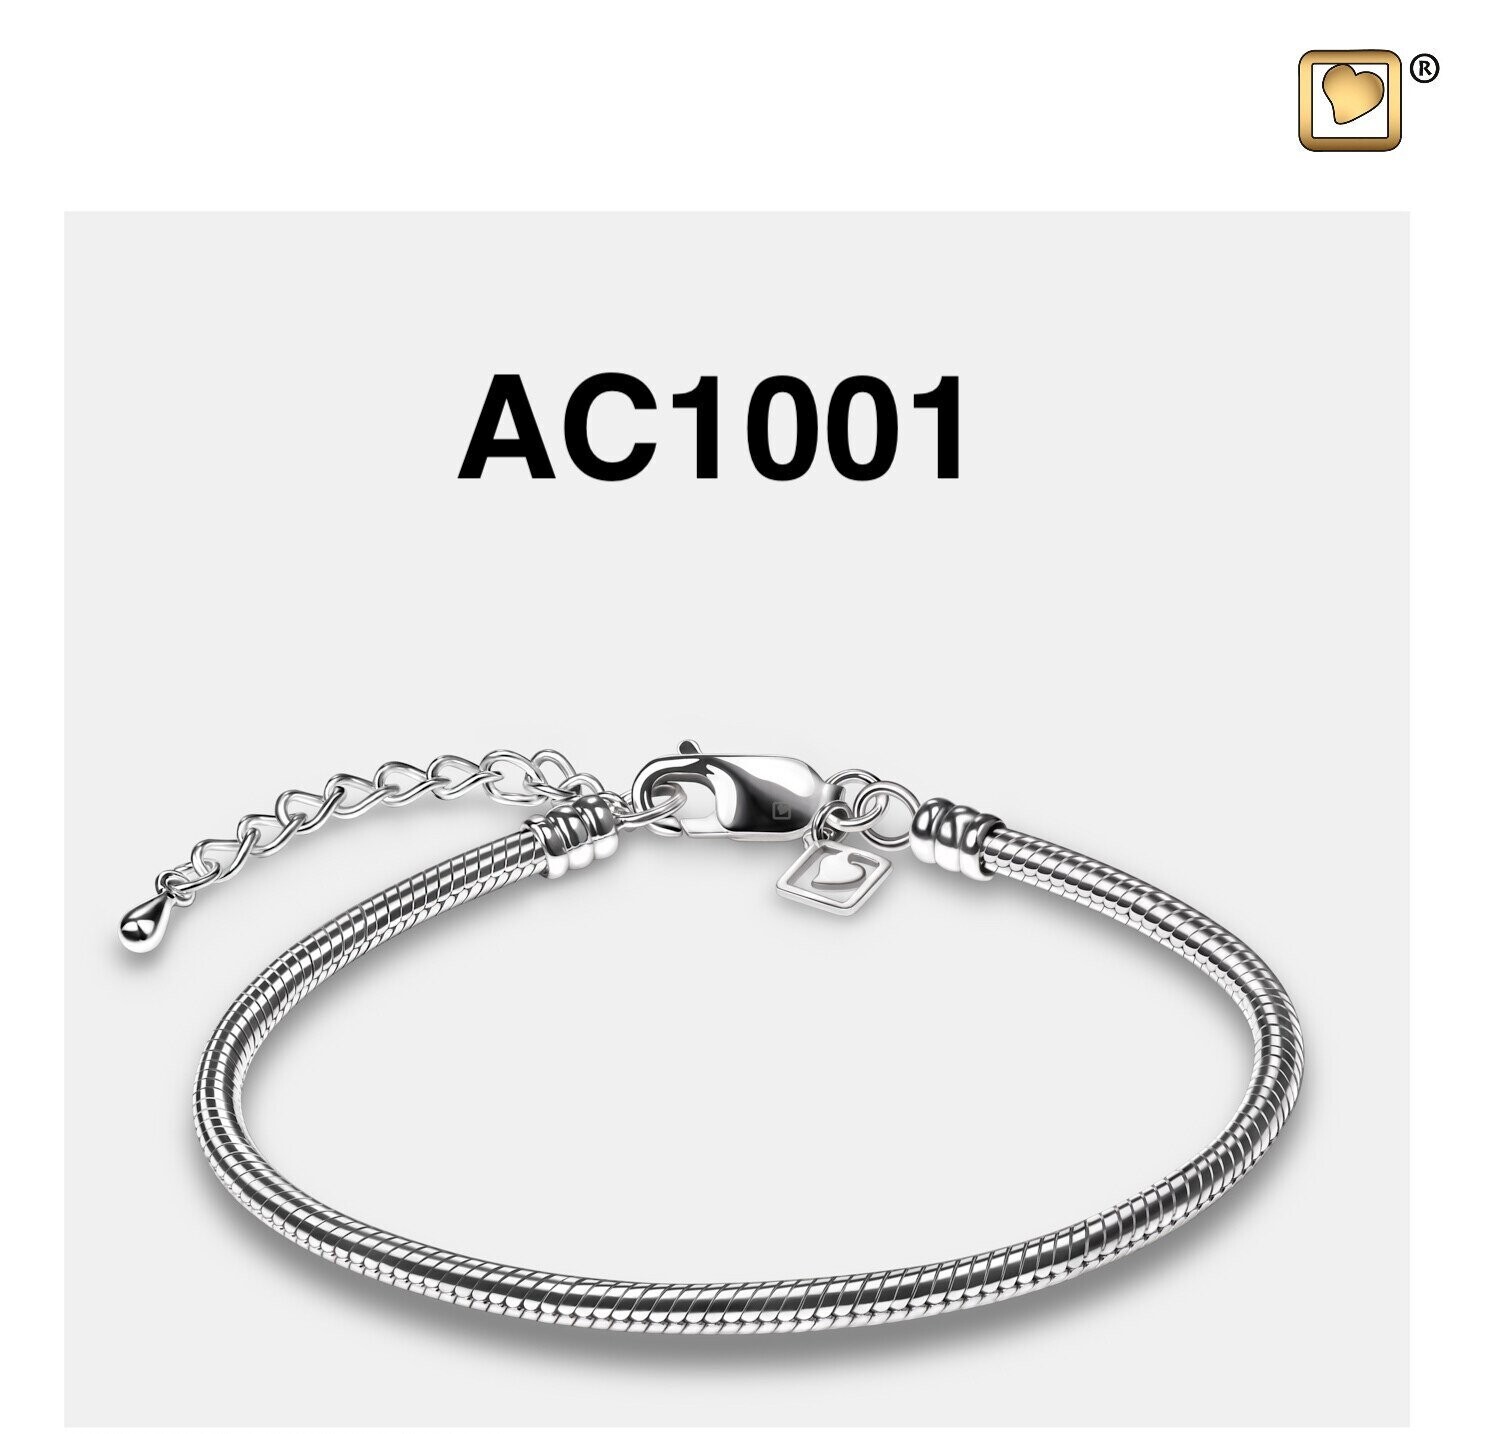 AC1001